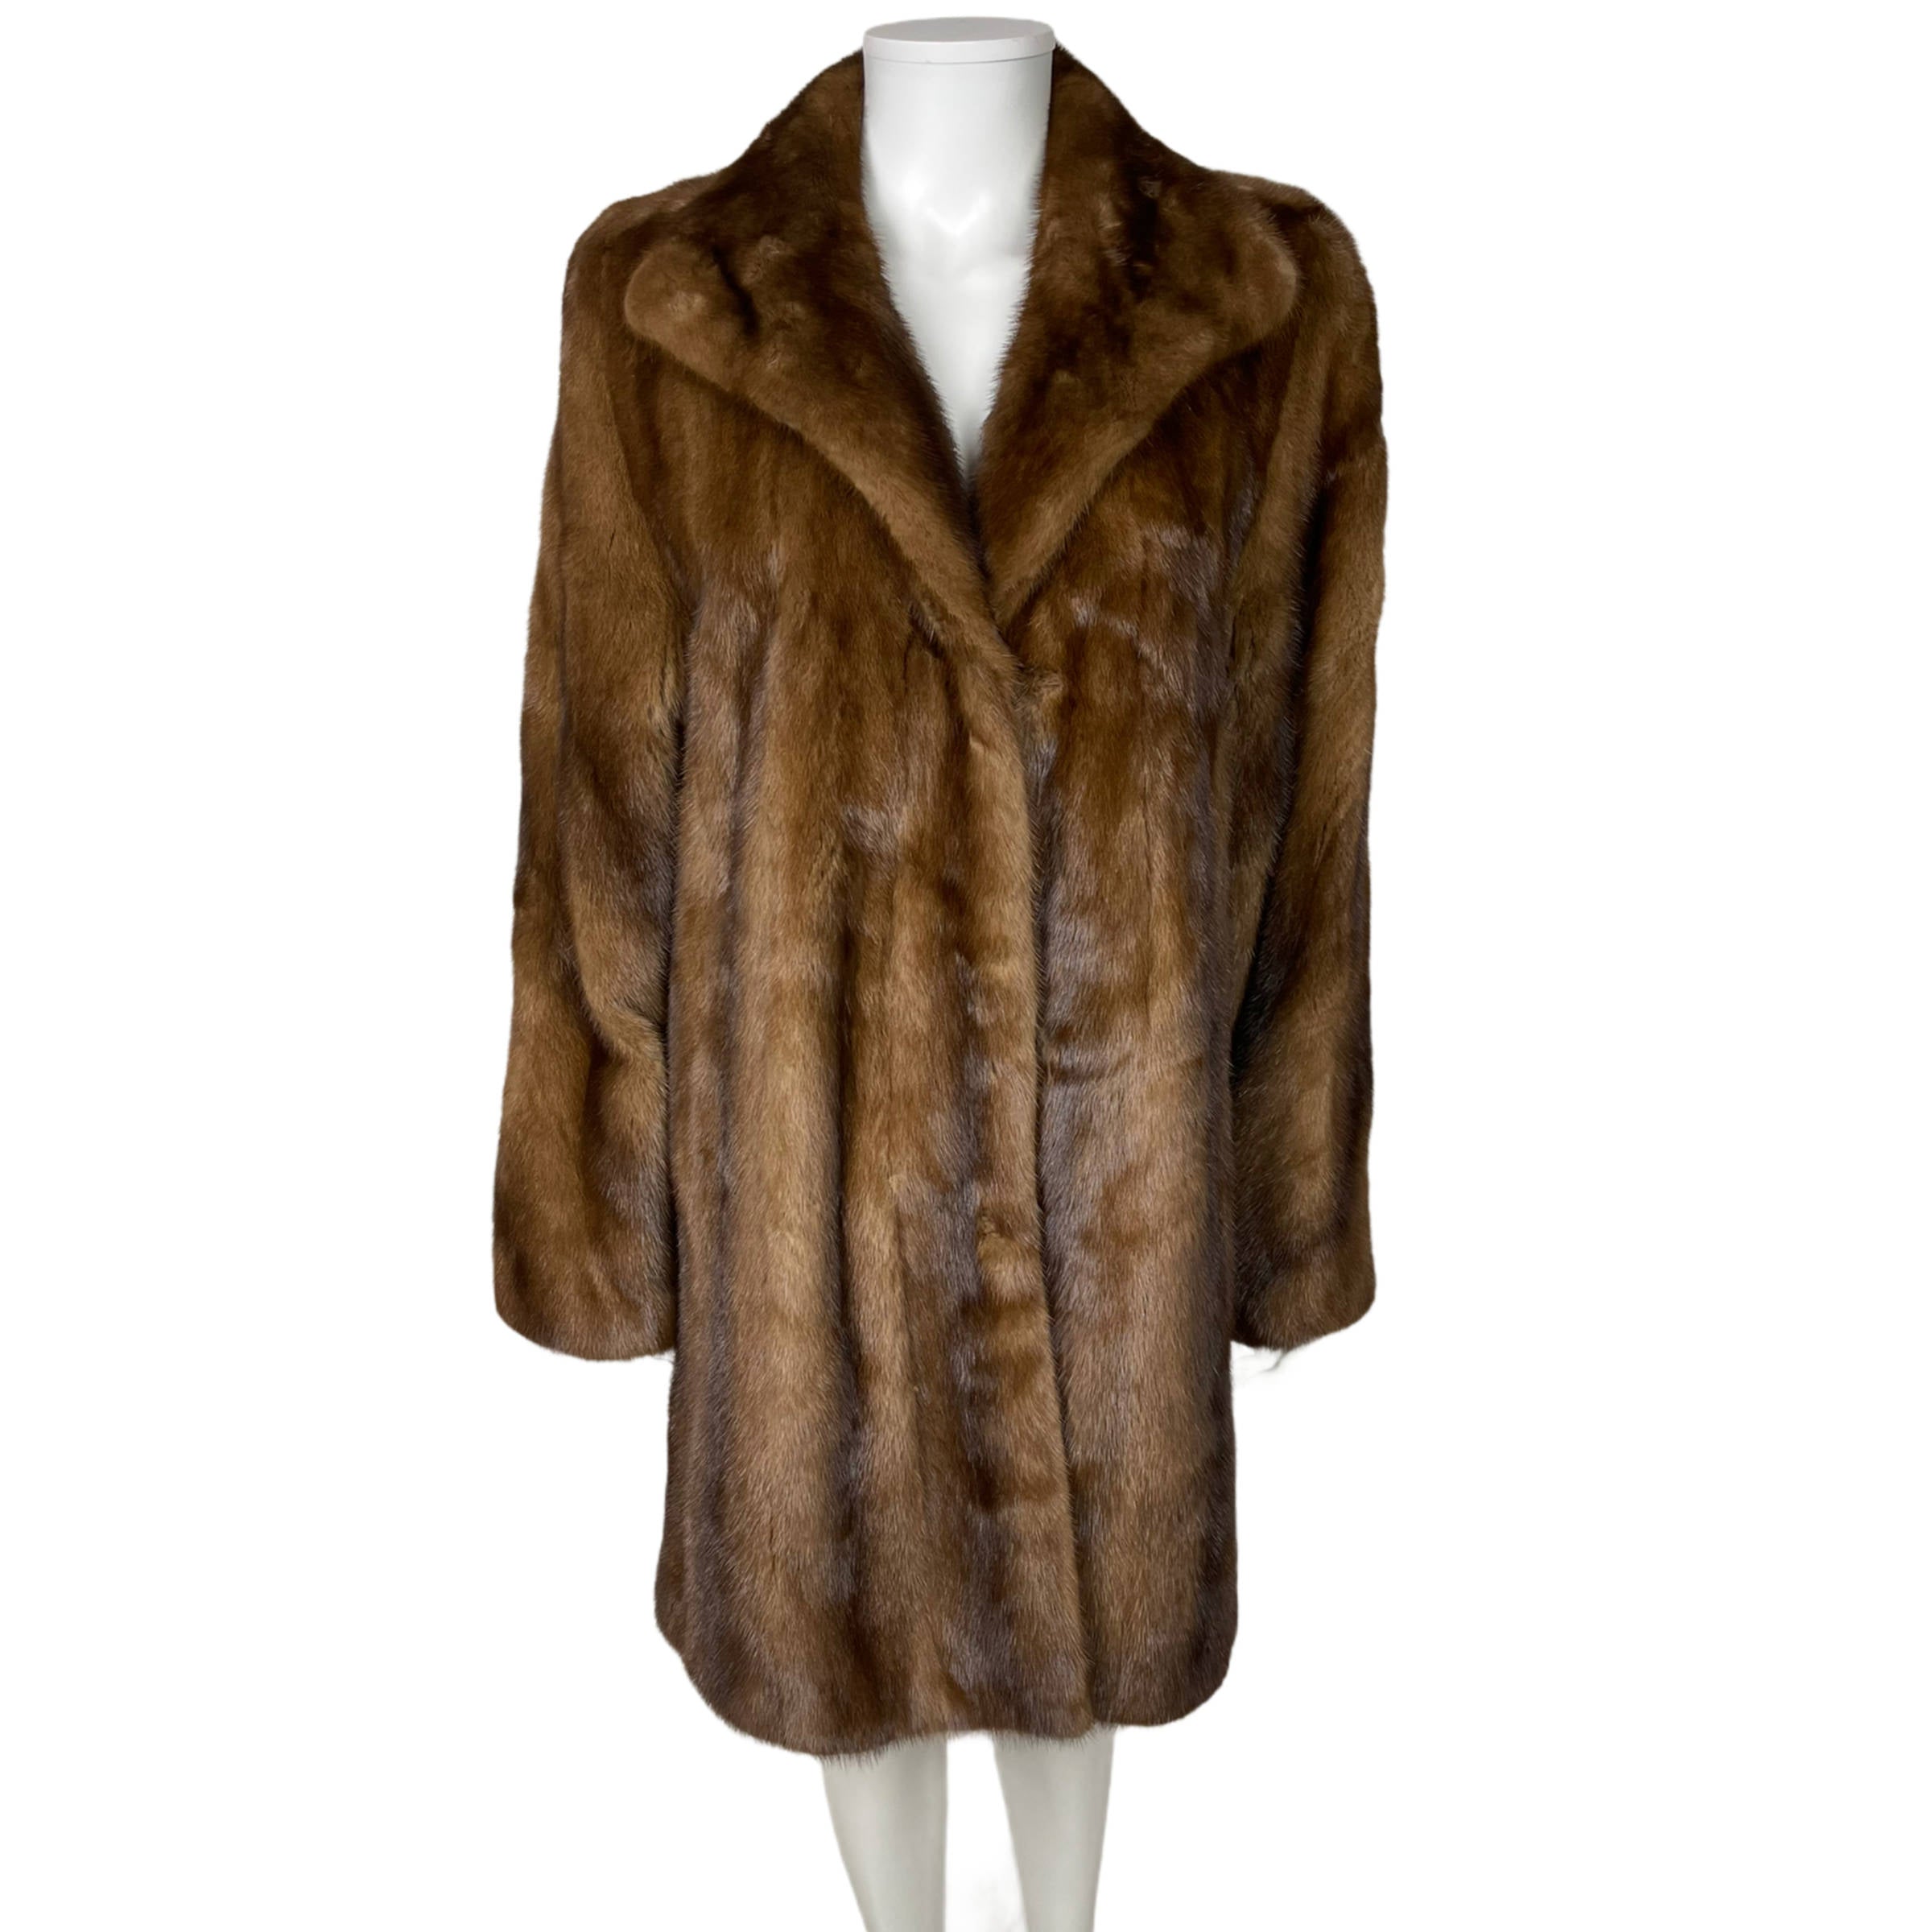 Louis Feraud Coats, Jackets & Vests for Women for sale